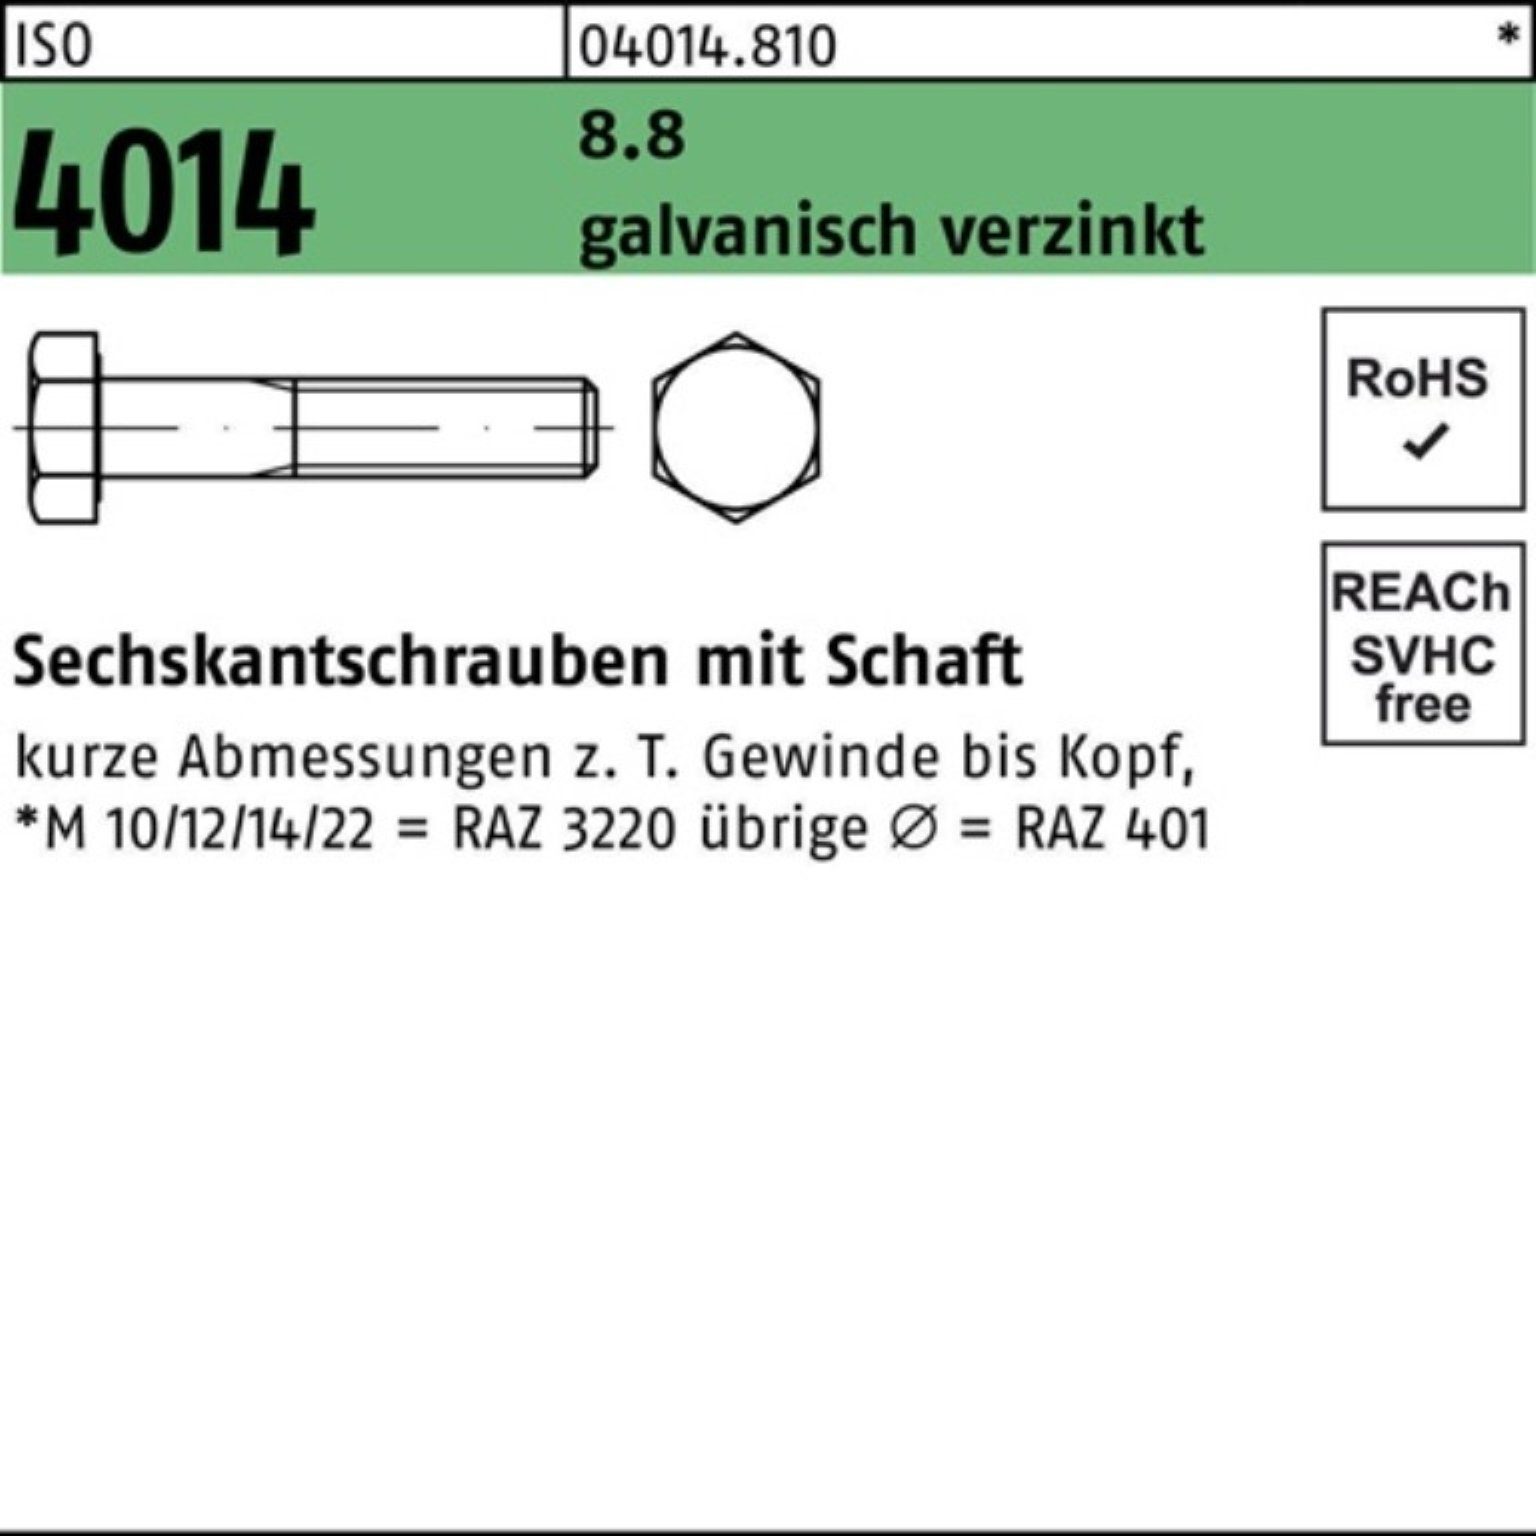 Sechskantschraube Sechskantschraube Schaft Bufab 100er 1 M27x 8.8 150 4014 galv.verz. ISO Pack